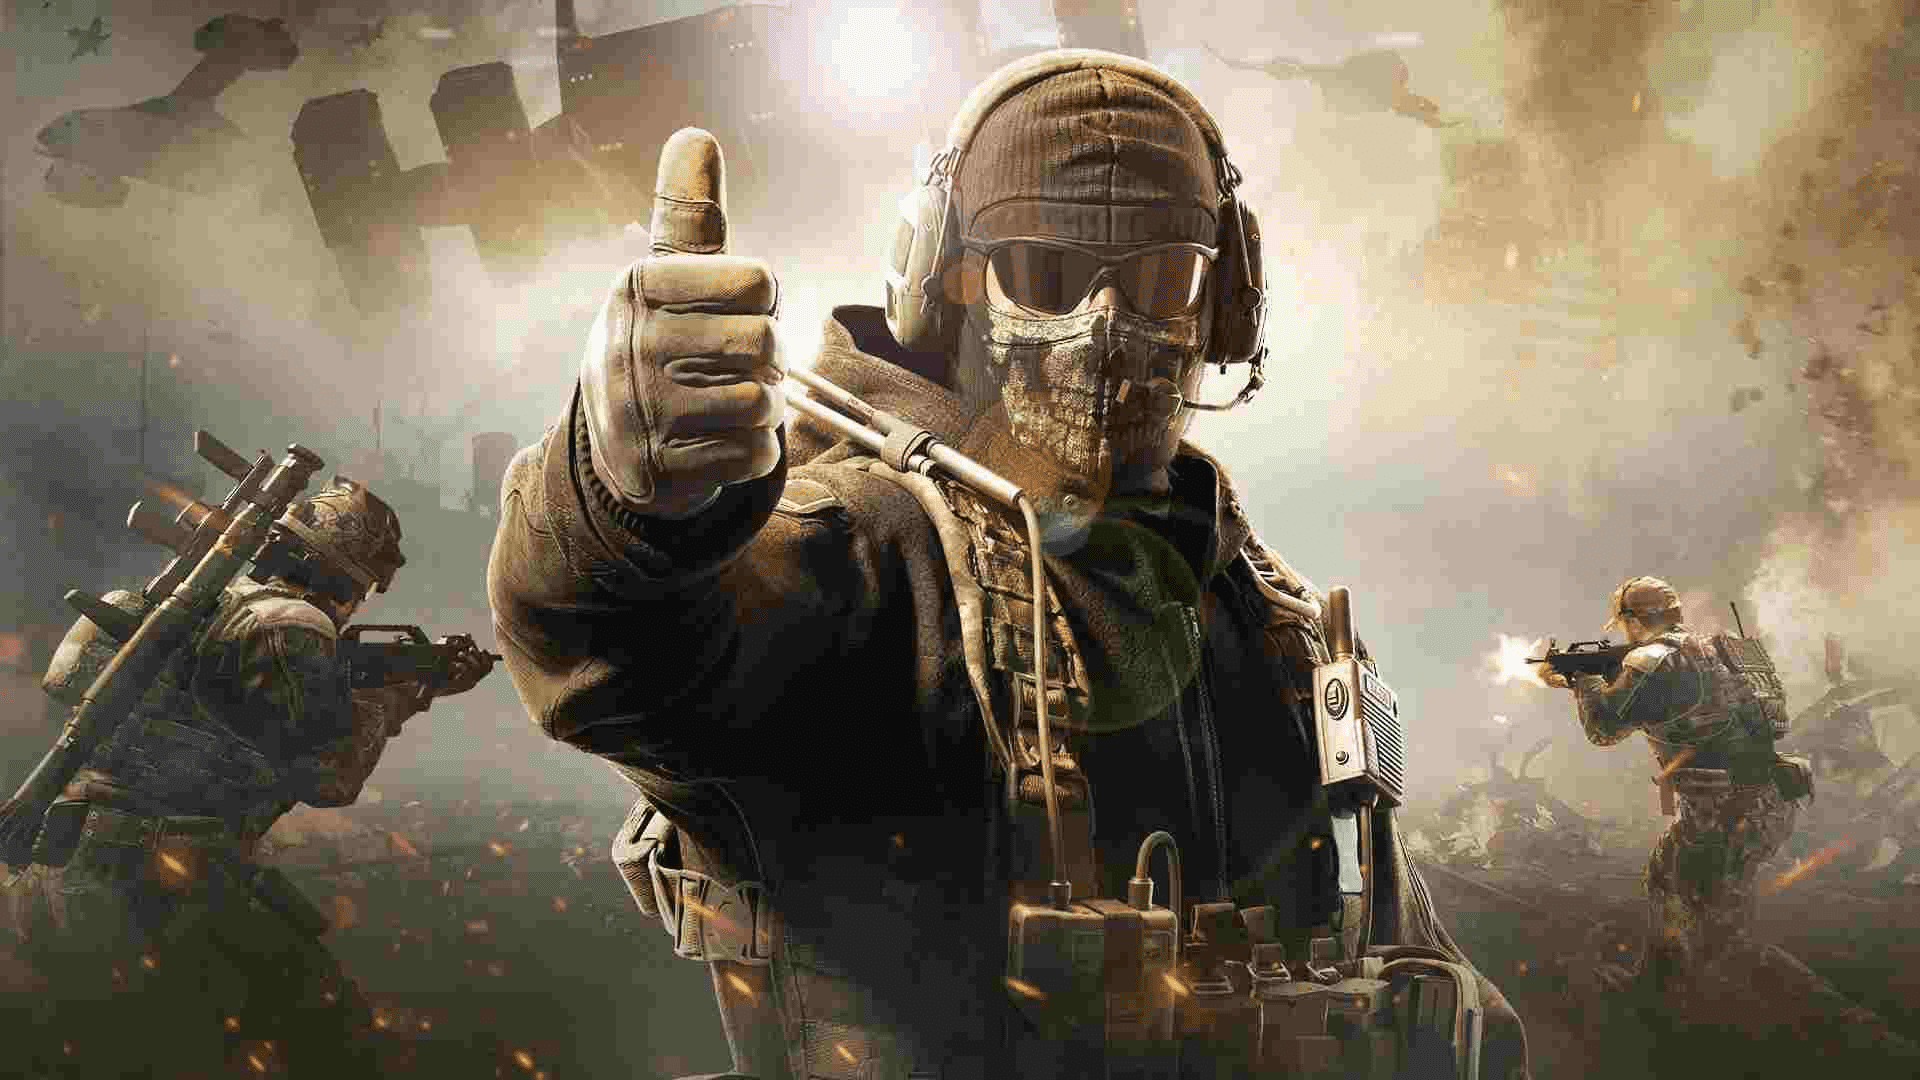 CoD: Modern Warfare tem a melhor relação na história da franquia